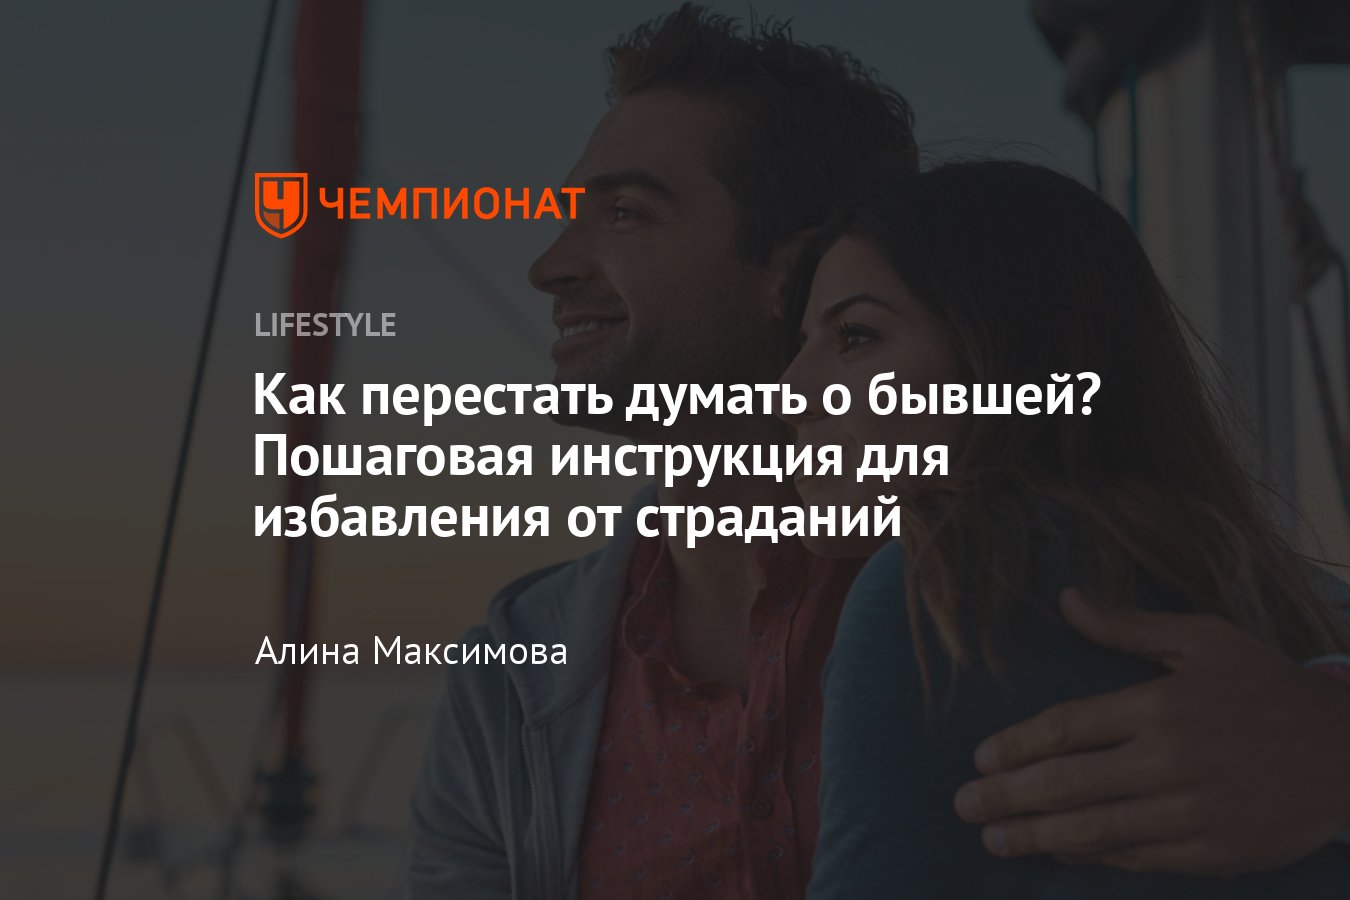 «Ушла девушка, я очень ее люблю. Что делать?» — Яндекс Кью